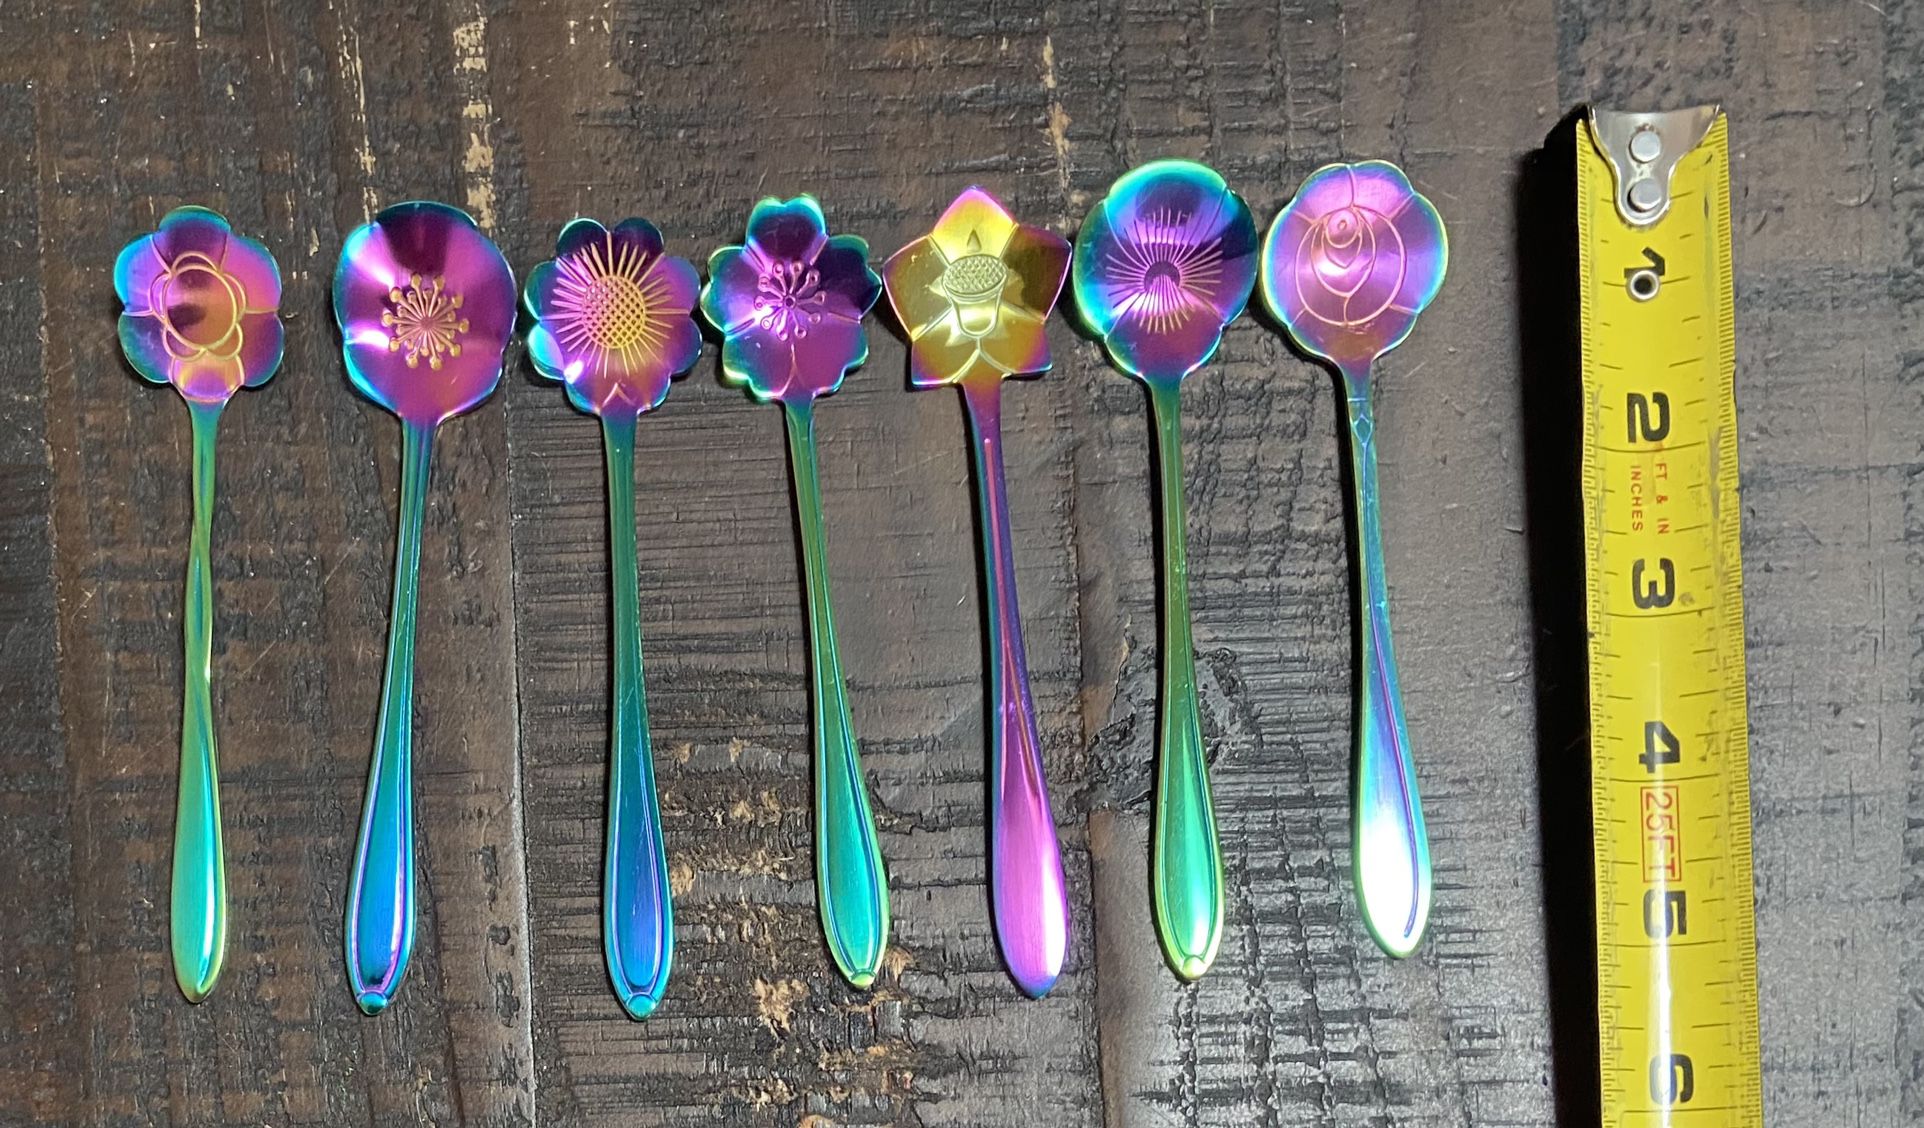 Souvenir Collectible Spoons $10 for all 